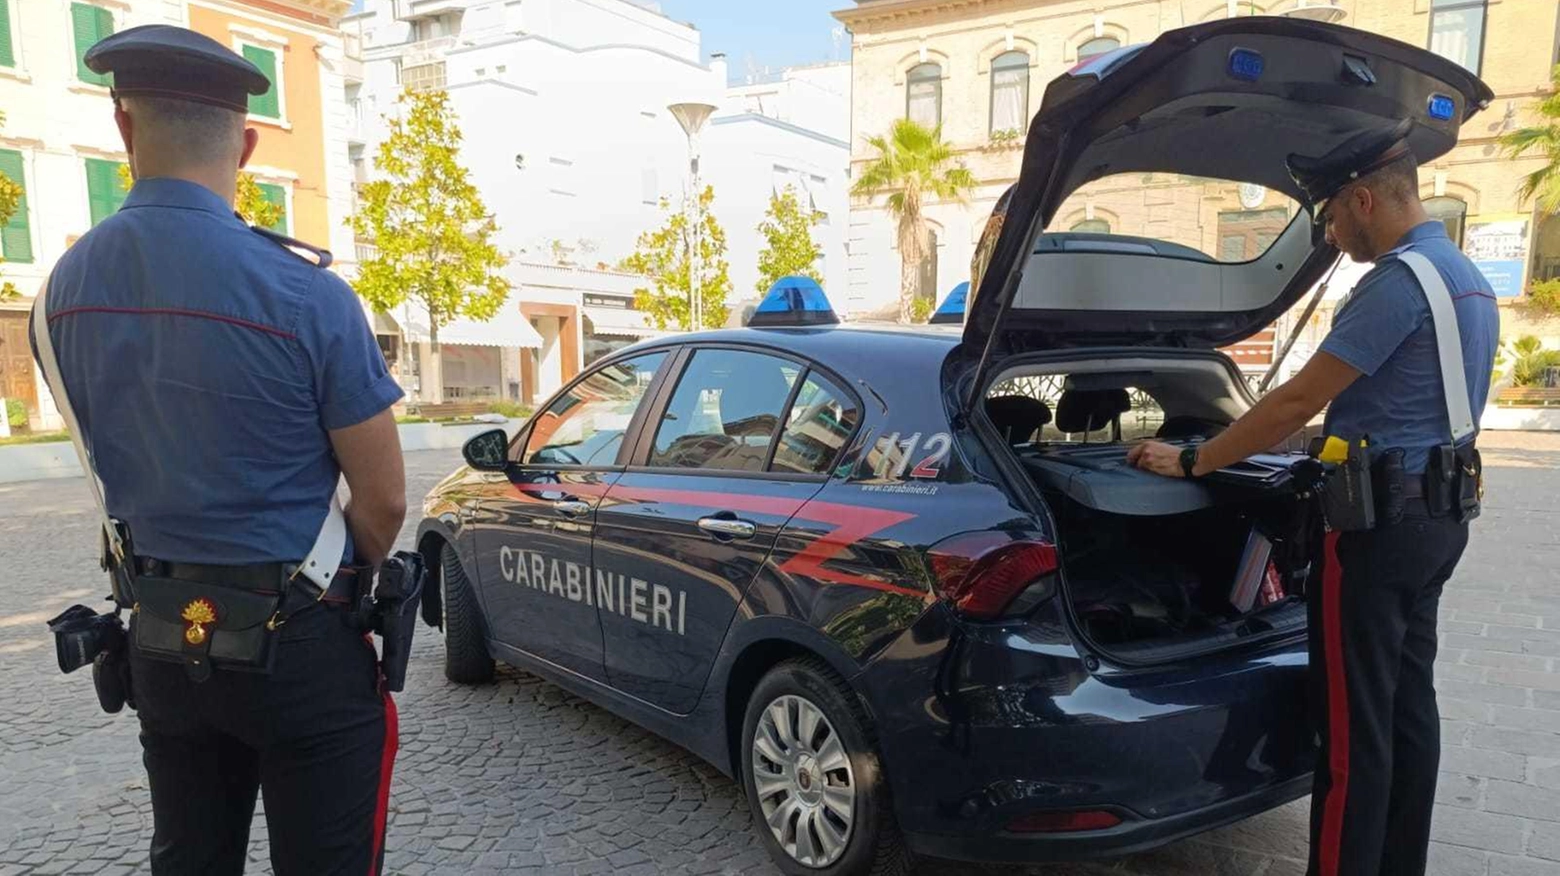 Le indagini sulla morte dell'84enne sono state affidate ai carabinieri